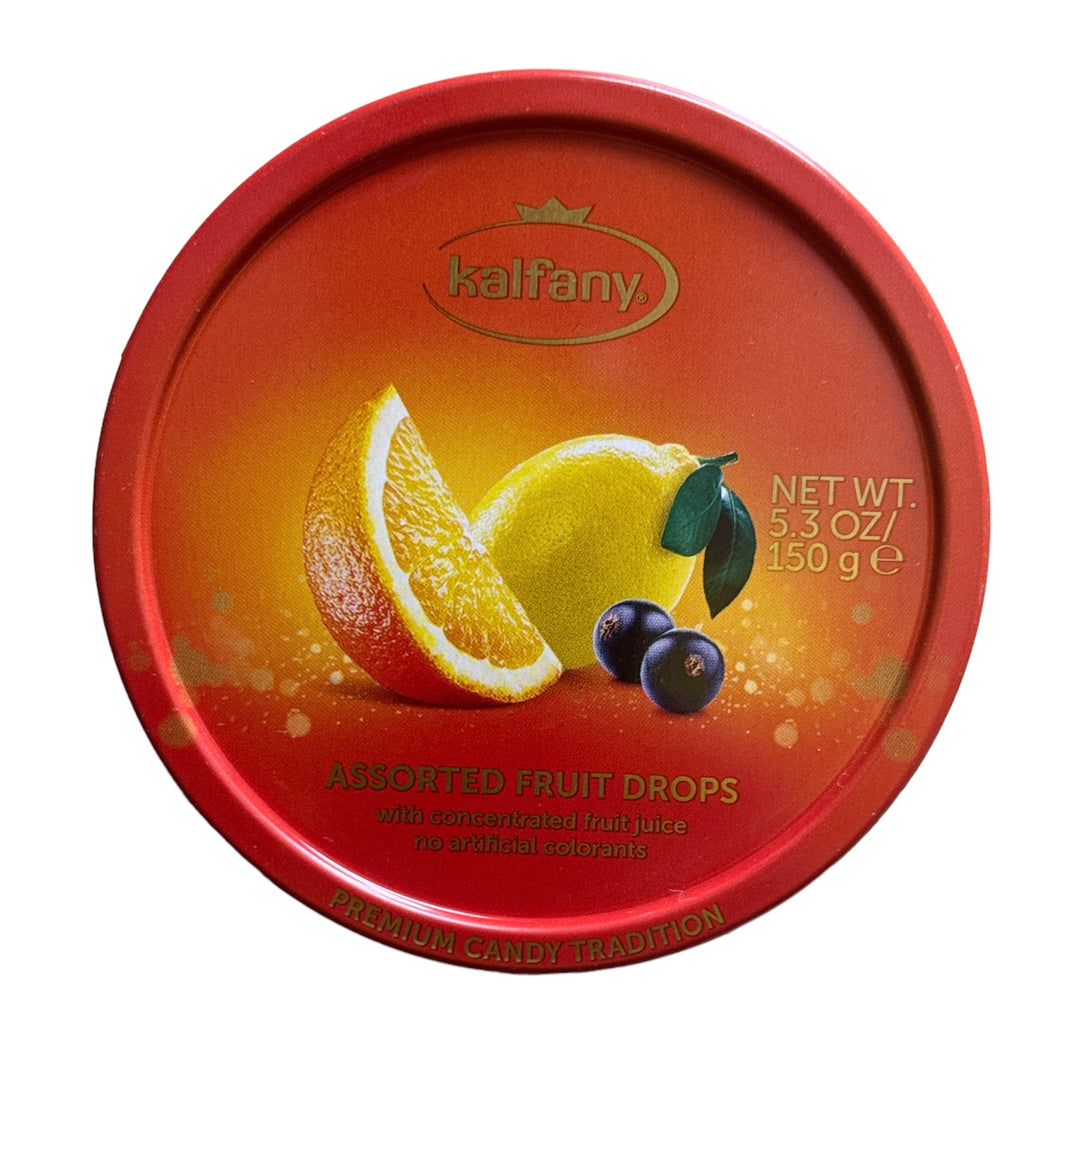 Assortiment de gouttes de fruits, avec jus de fruits concentré sans colorants artificiels. 150g